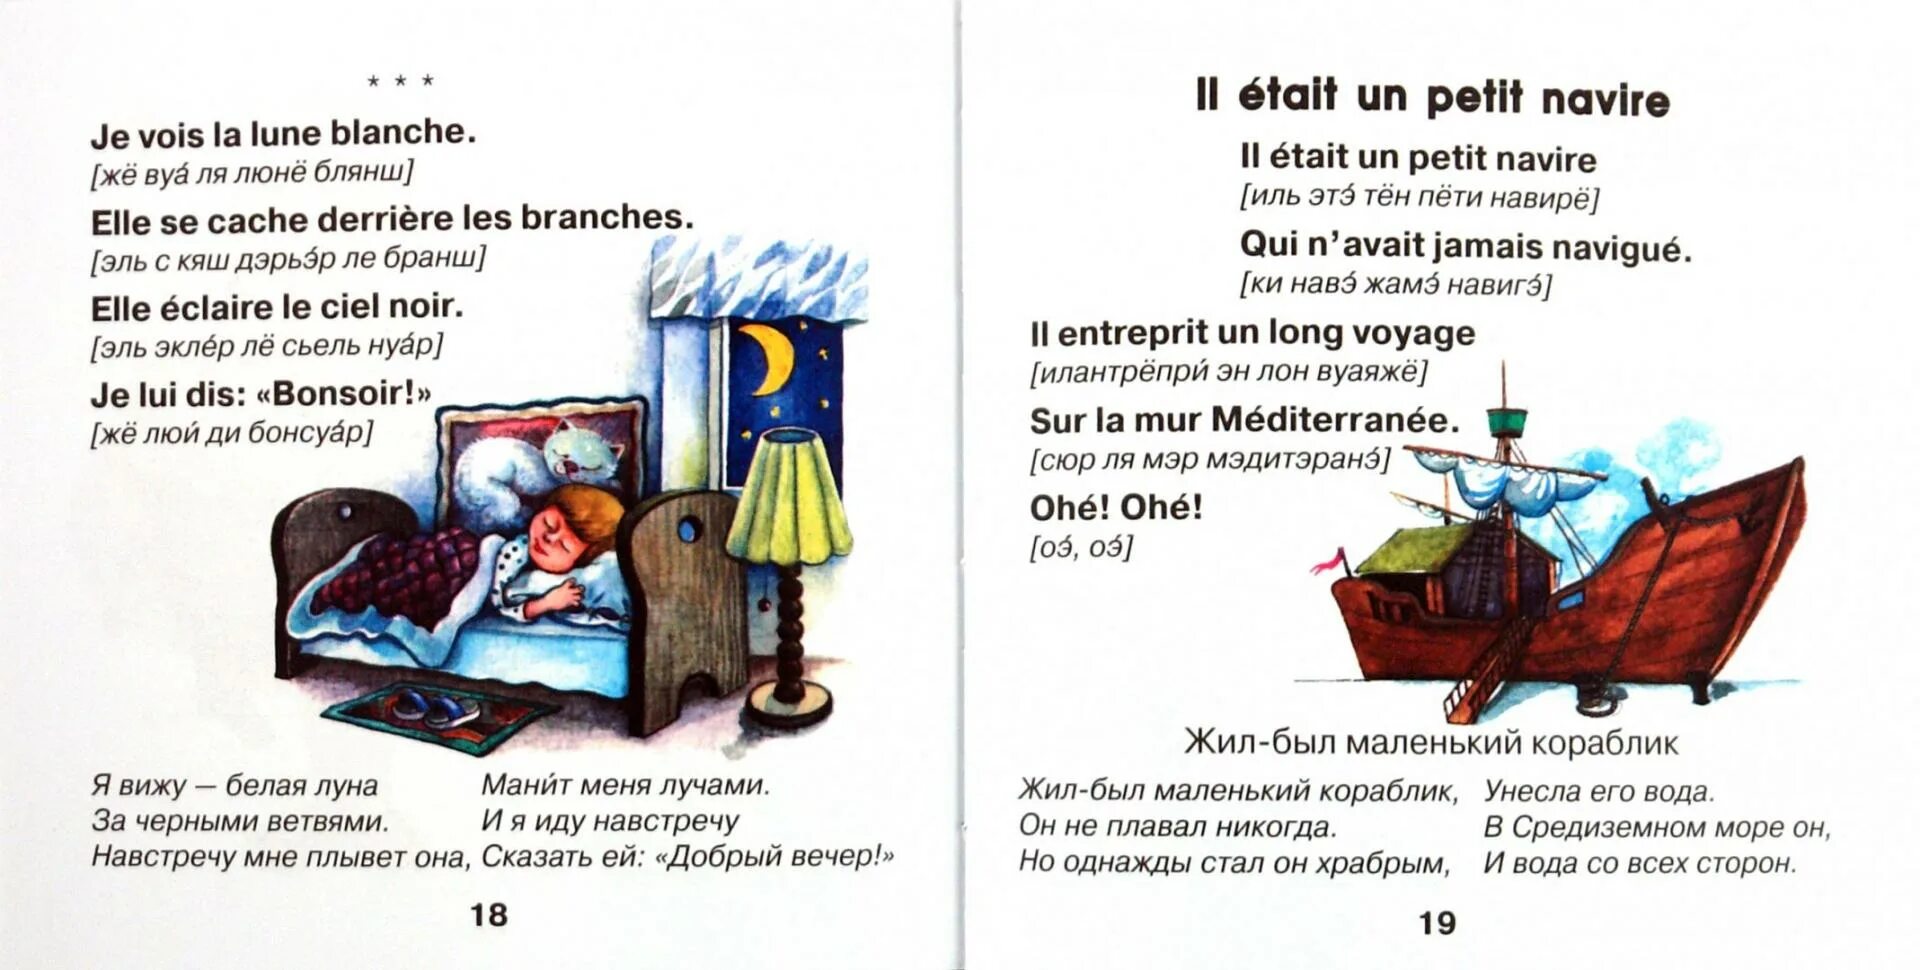 Считалка на английском. Стихи на французском. Детские стихи на французском языке. Французский детский стик. Стишки для детей на французском языке.